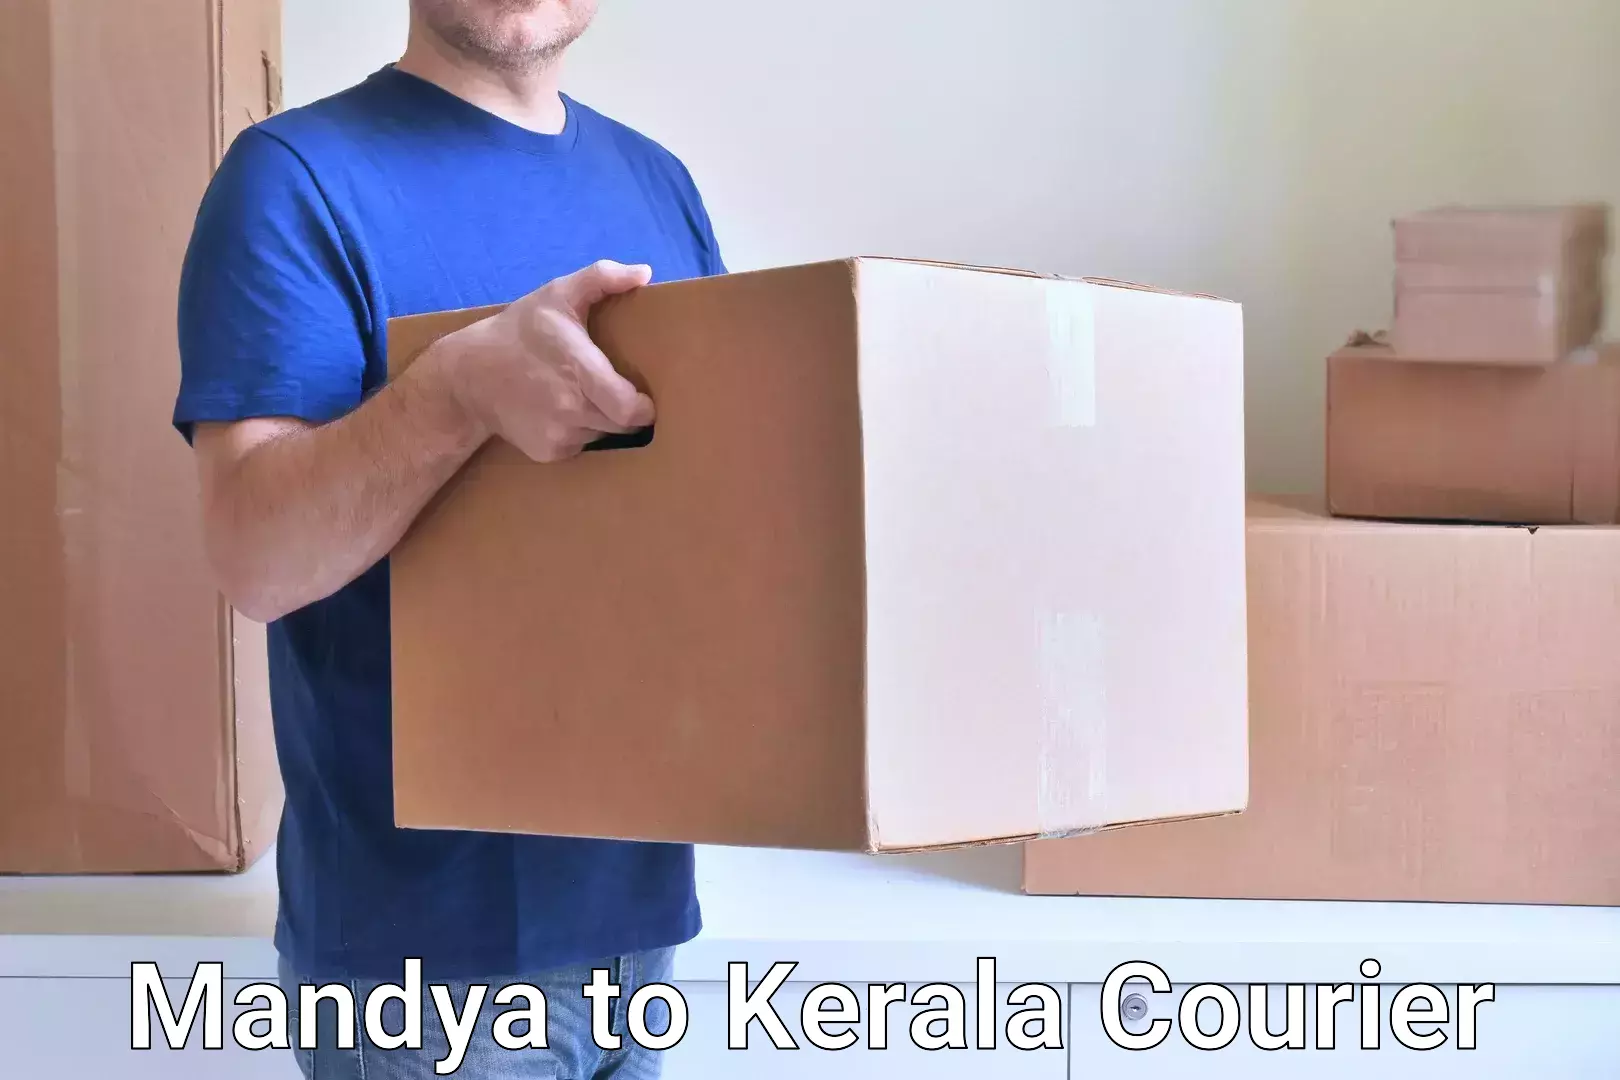 Customer-focused courier Mandya to Thiruvananthapuram